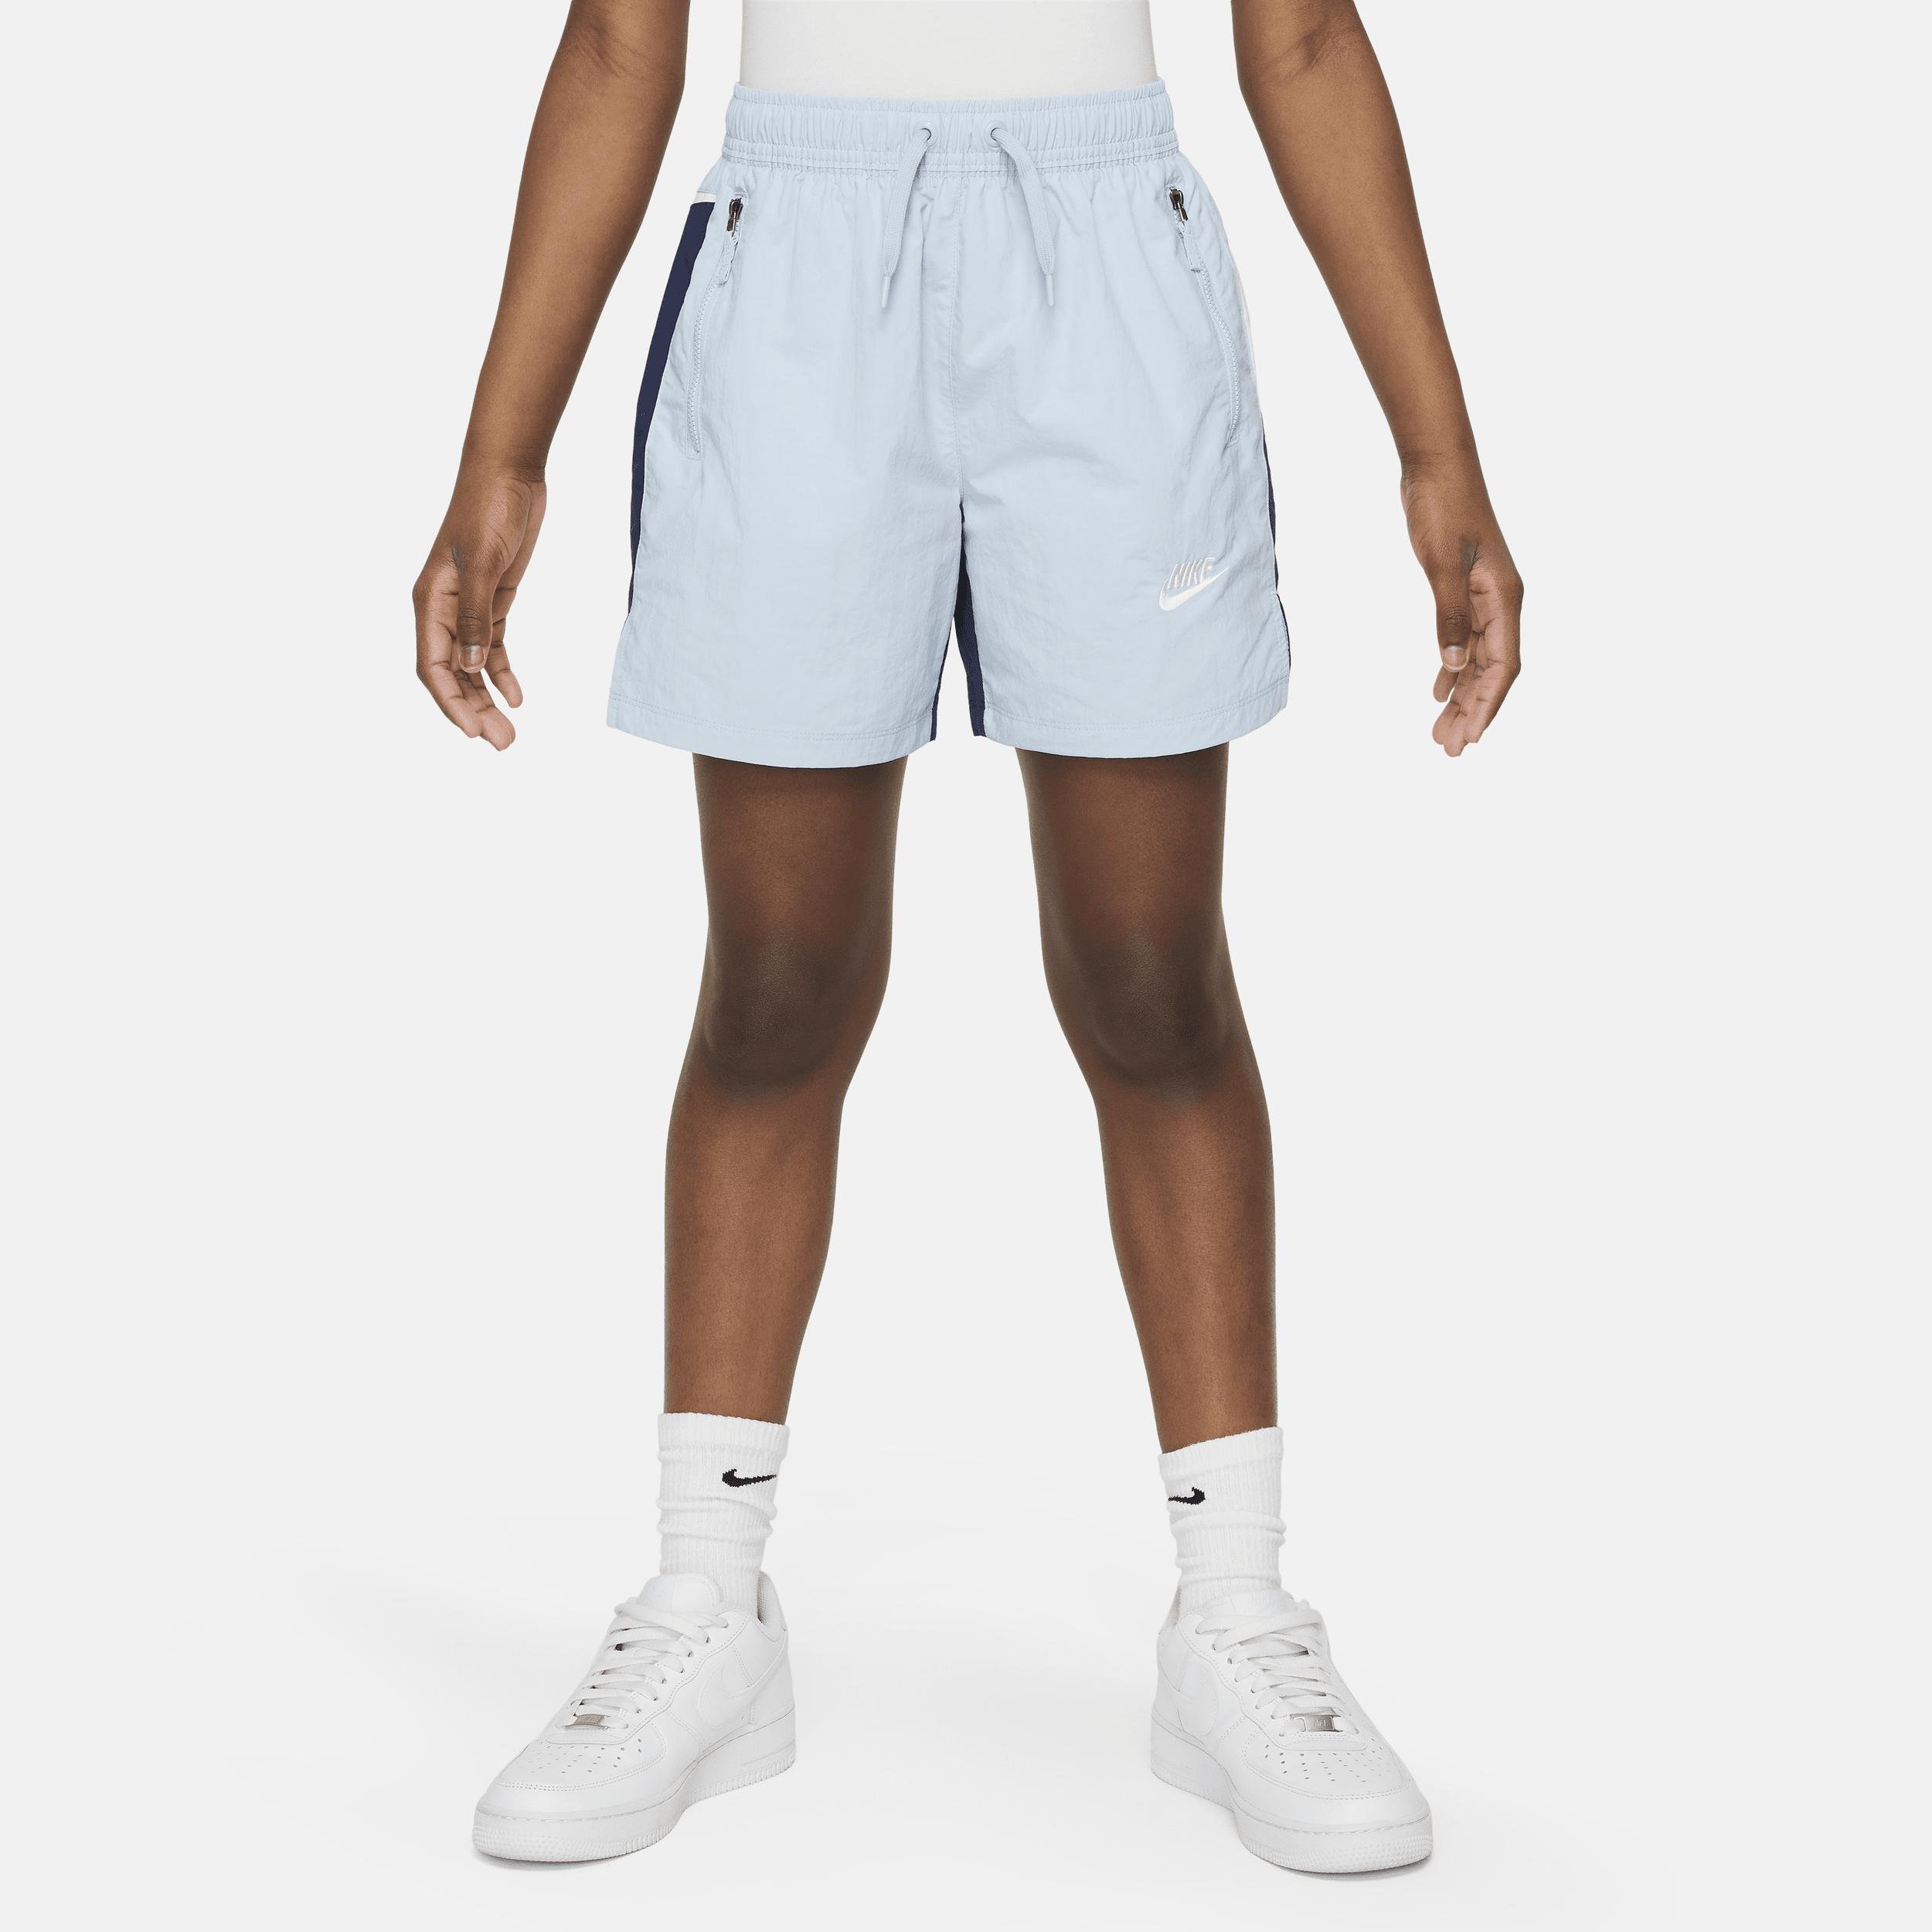 Nike Sportswear Amplify Big Kids' Woven Shorts by NIKE